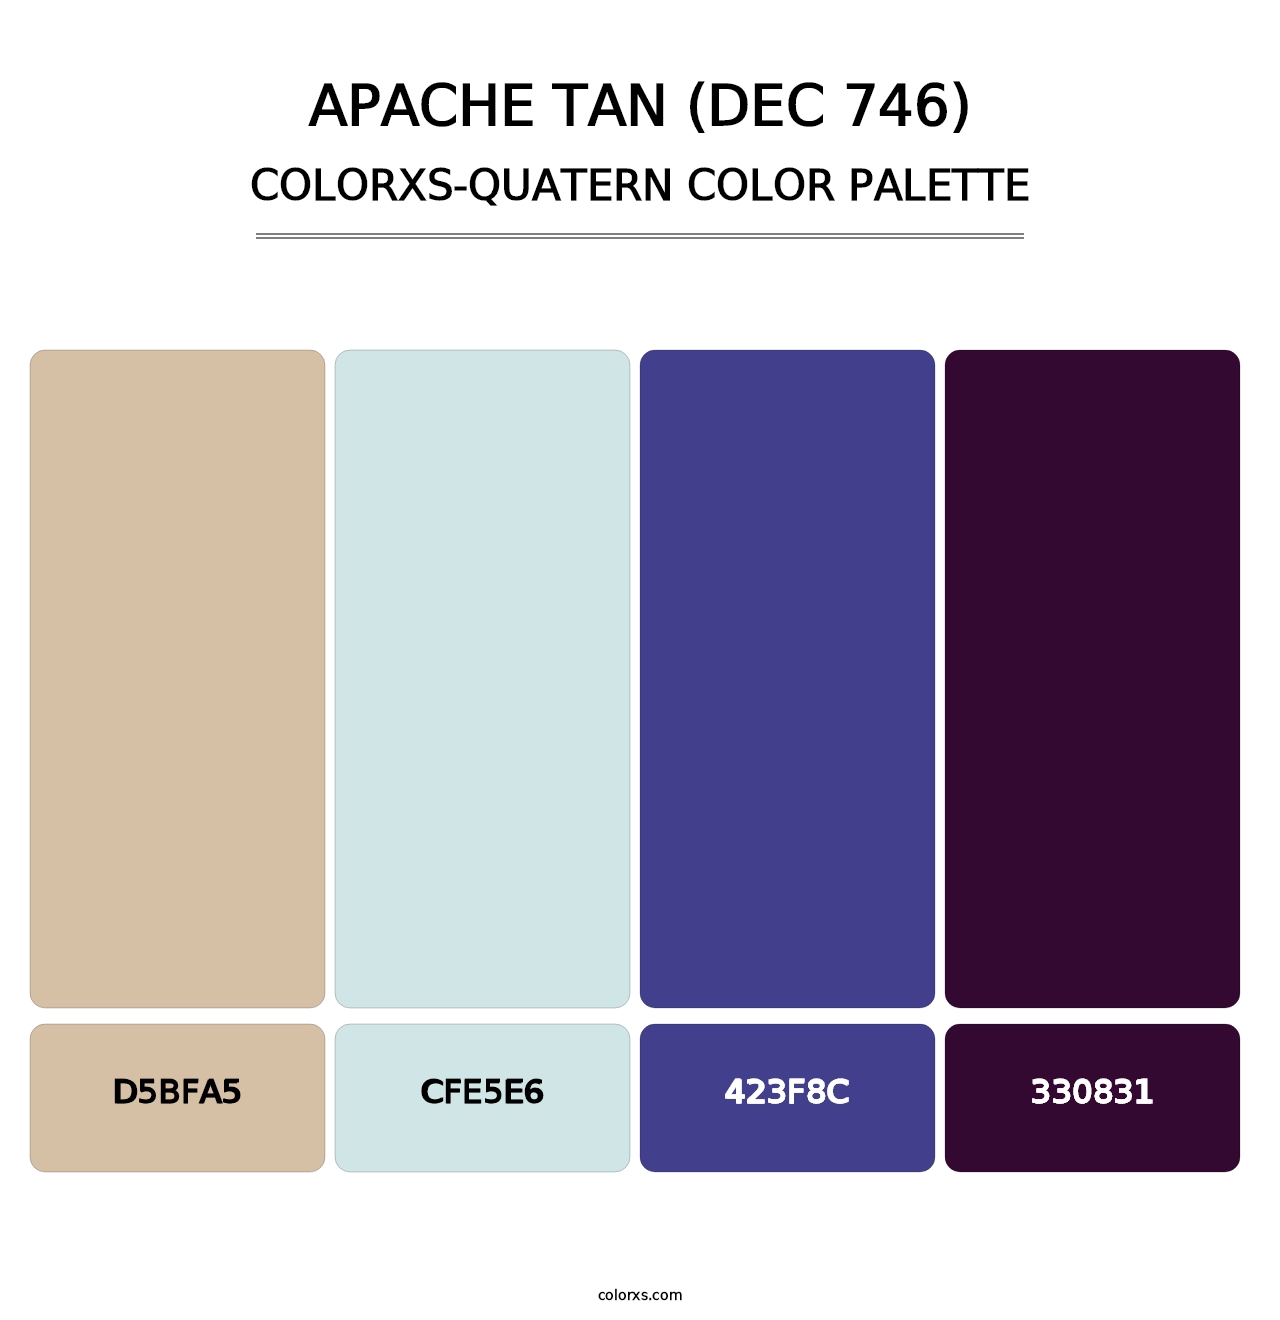 Apache Tan (DEC 746) - Colorxs Quatern Palette